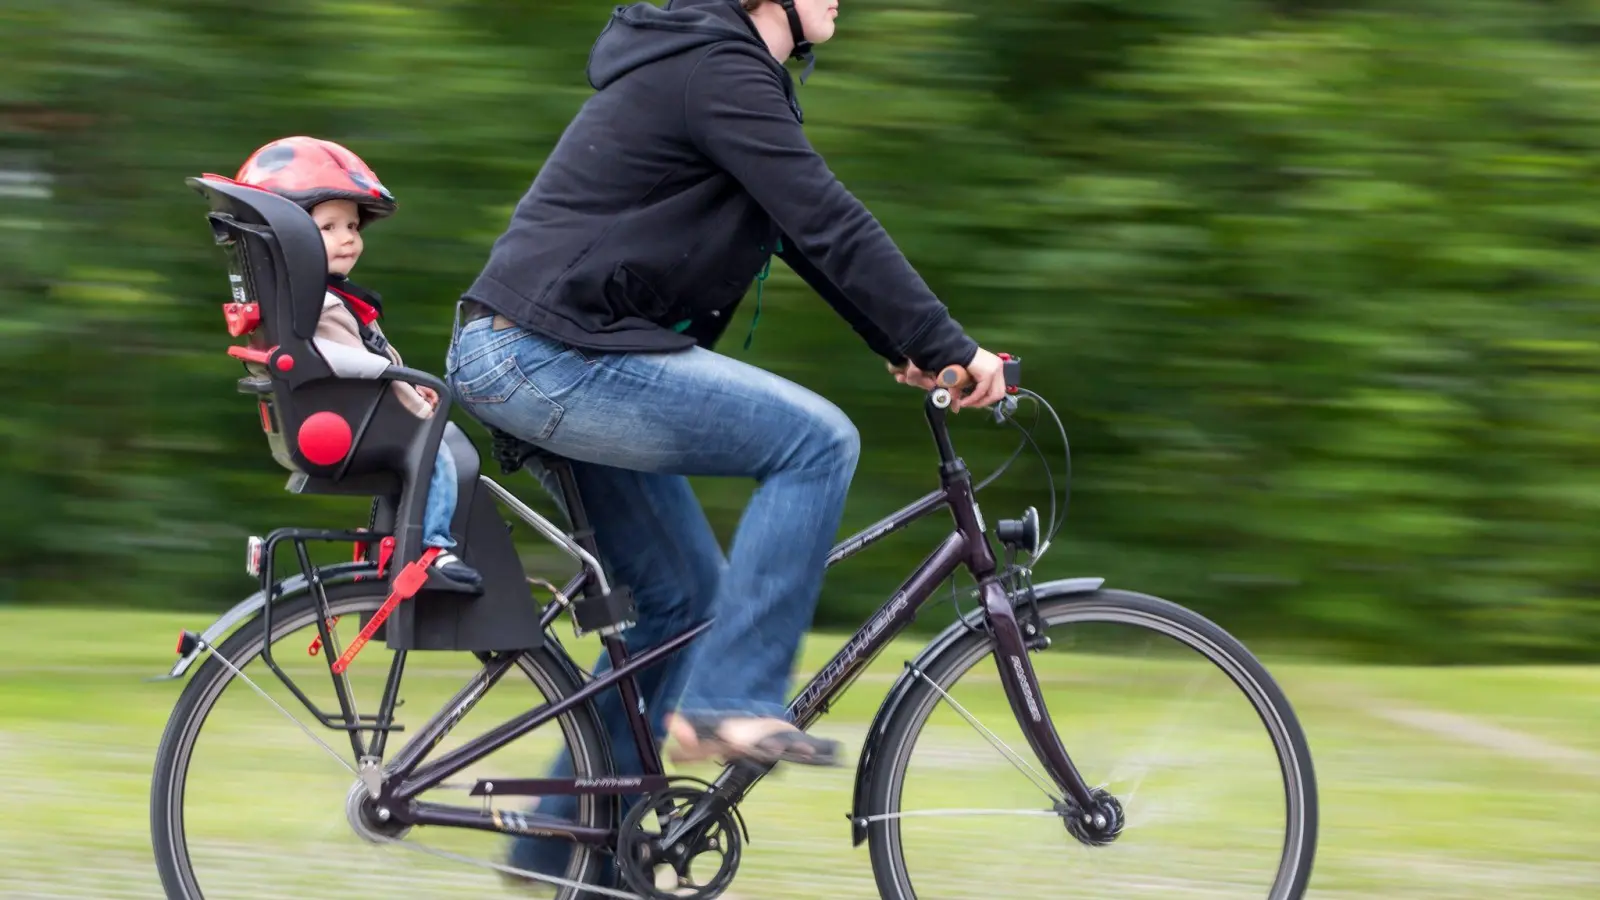 Vorbildlich radeln: Mit passendem Kindersitz - und nicht nur der Nachwuchs trägt Helm. (Foto: Michael Reichel/dpa-Zentralbild/dpa-tmn)